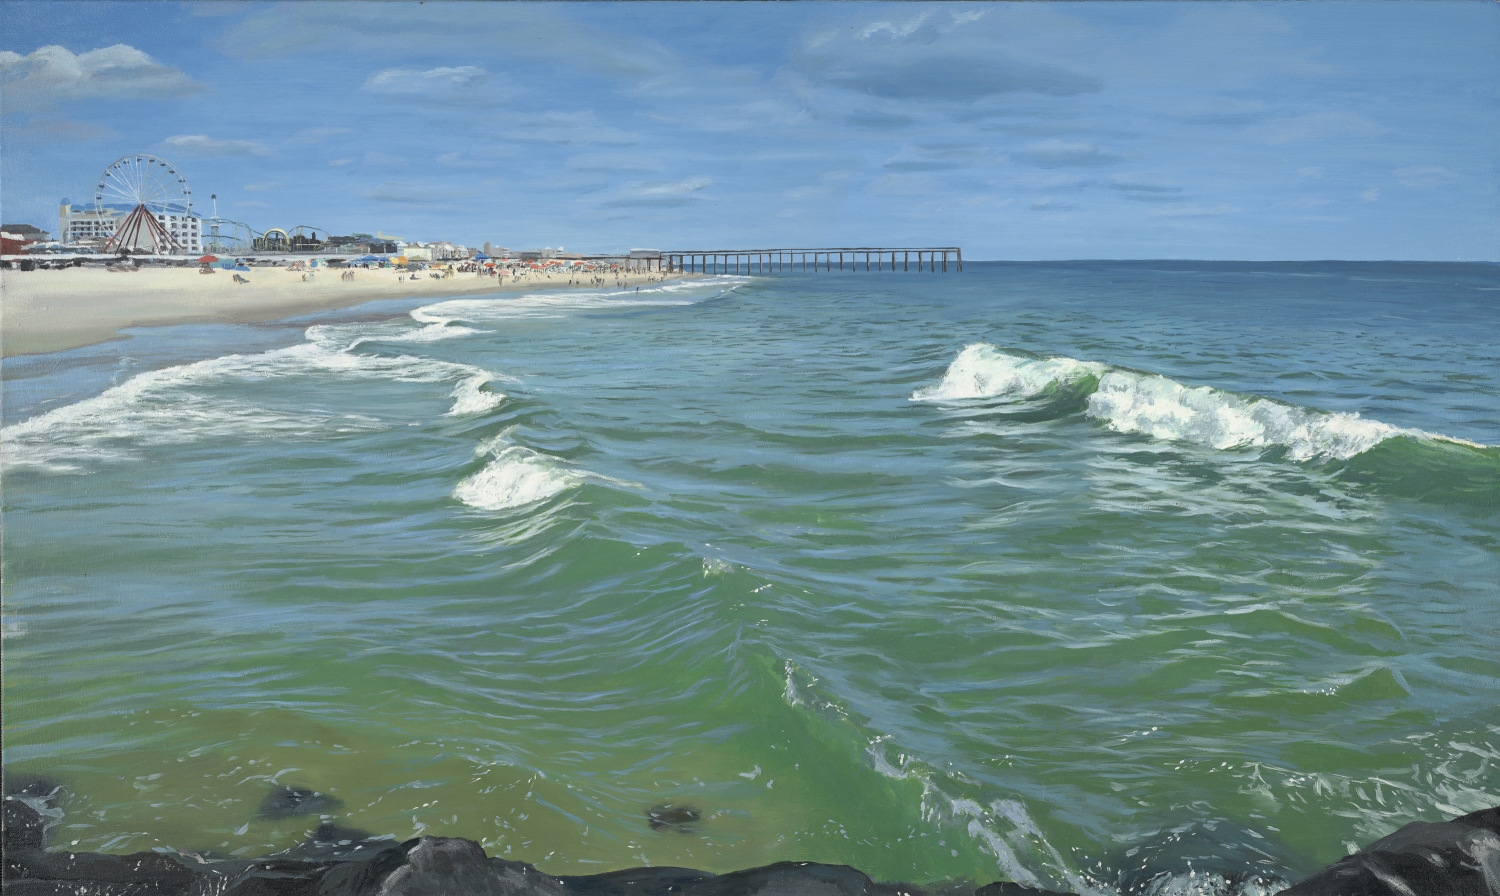 Boardwalk, oil on canvas, 24" x 40", 2010.